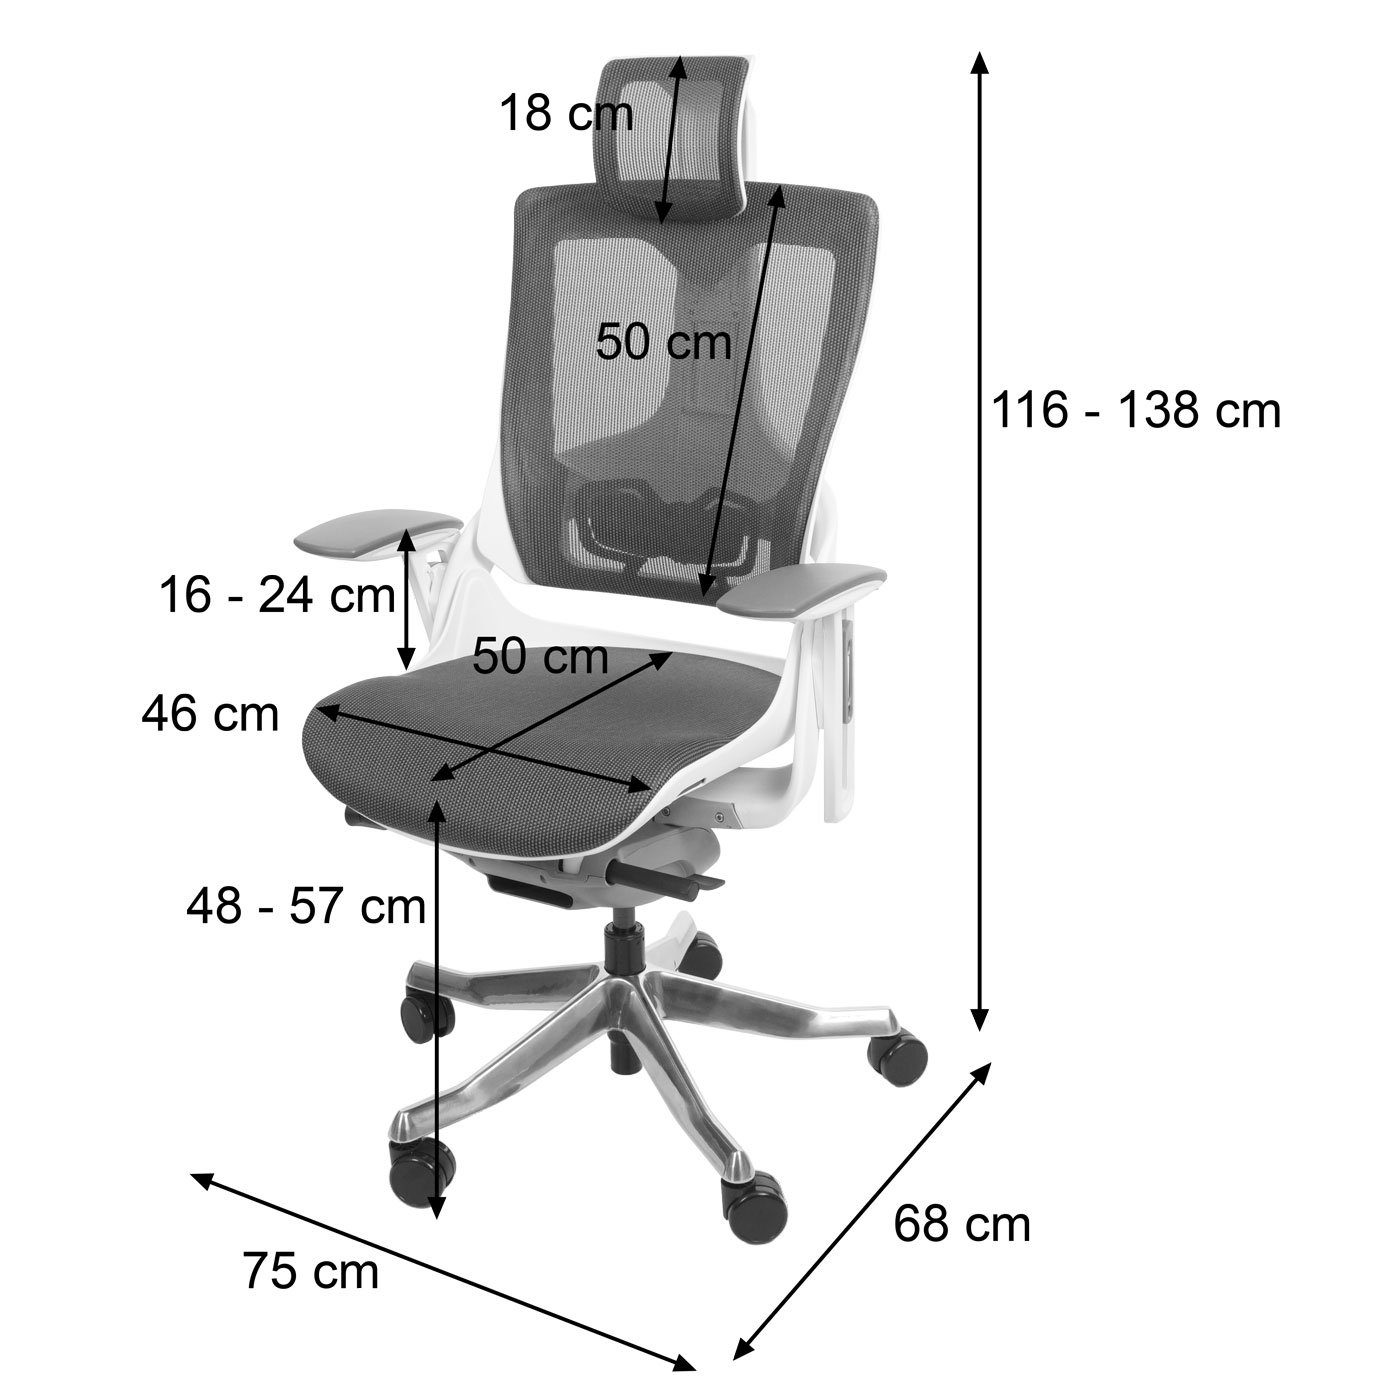 MCW Schreibtischstuhl Adelaide, | Rückenlehne, schwarz-grau Netzbespannung weiß/grau Luftzirkulation für Höhenverstellbare